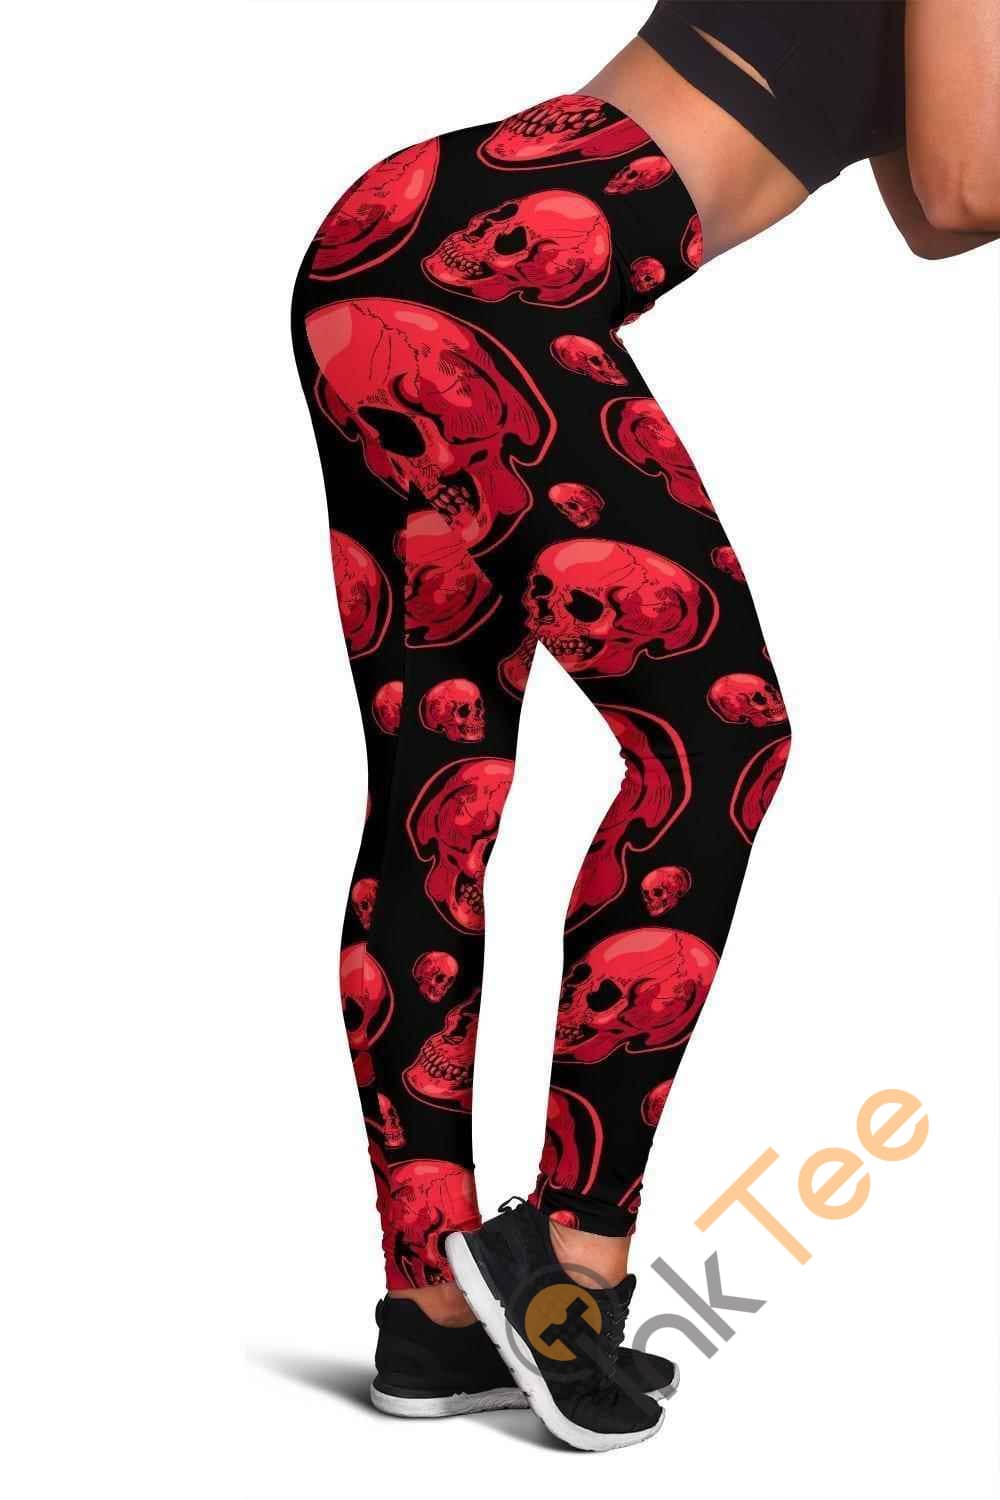 Inktee Store - Dark Pink Skull 3D All Over Print For Yoga Fitness Women'S Leggings Image